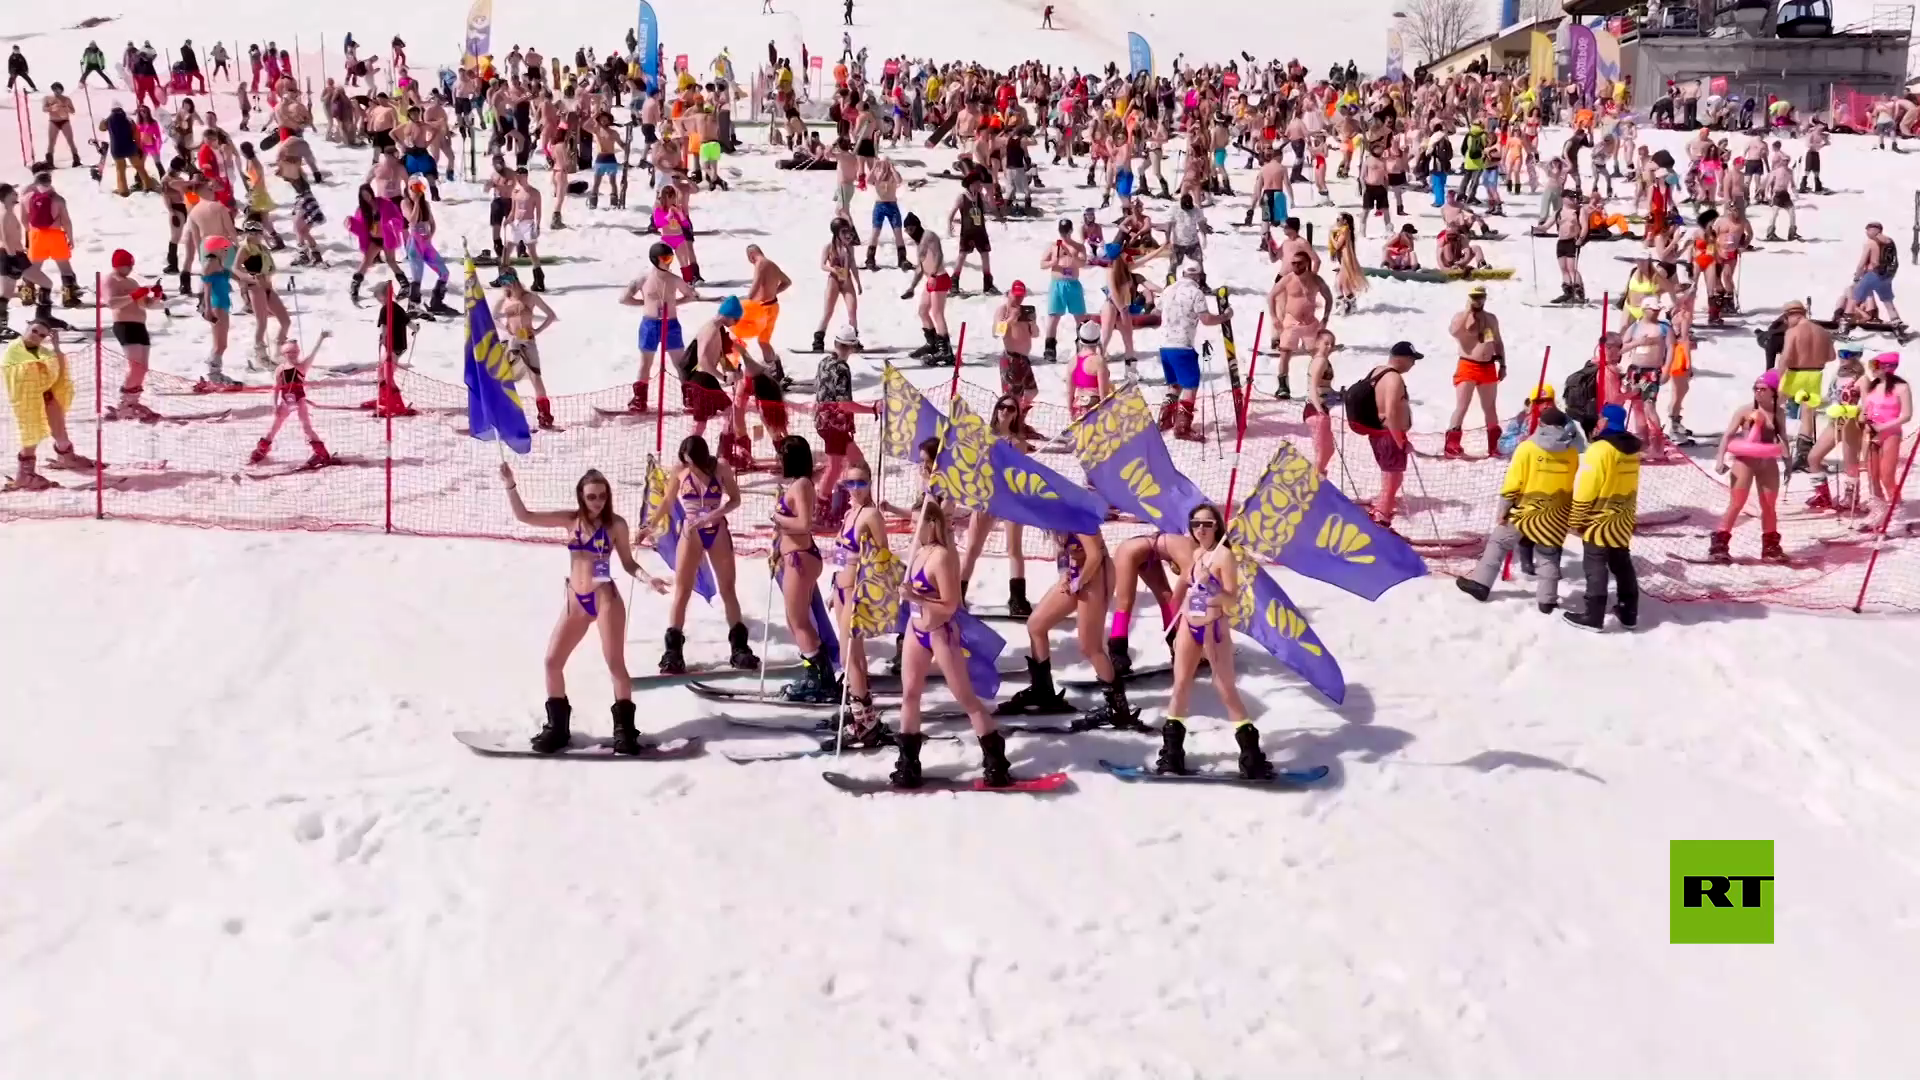 شاهد بالفيديو.. مهرجان التزلج بالبيكيني في منتجع شيريغيش الروسي